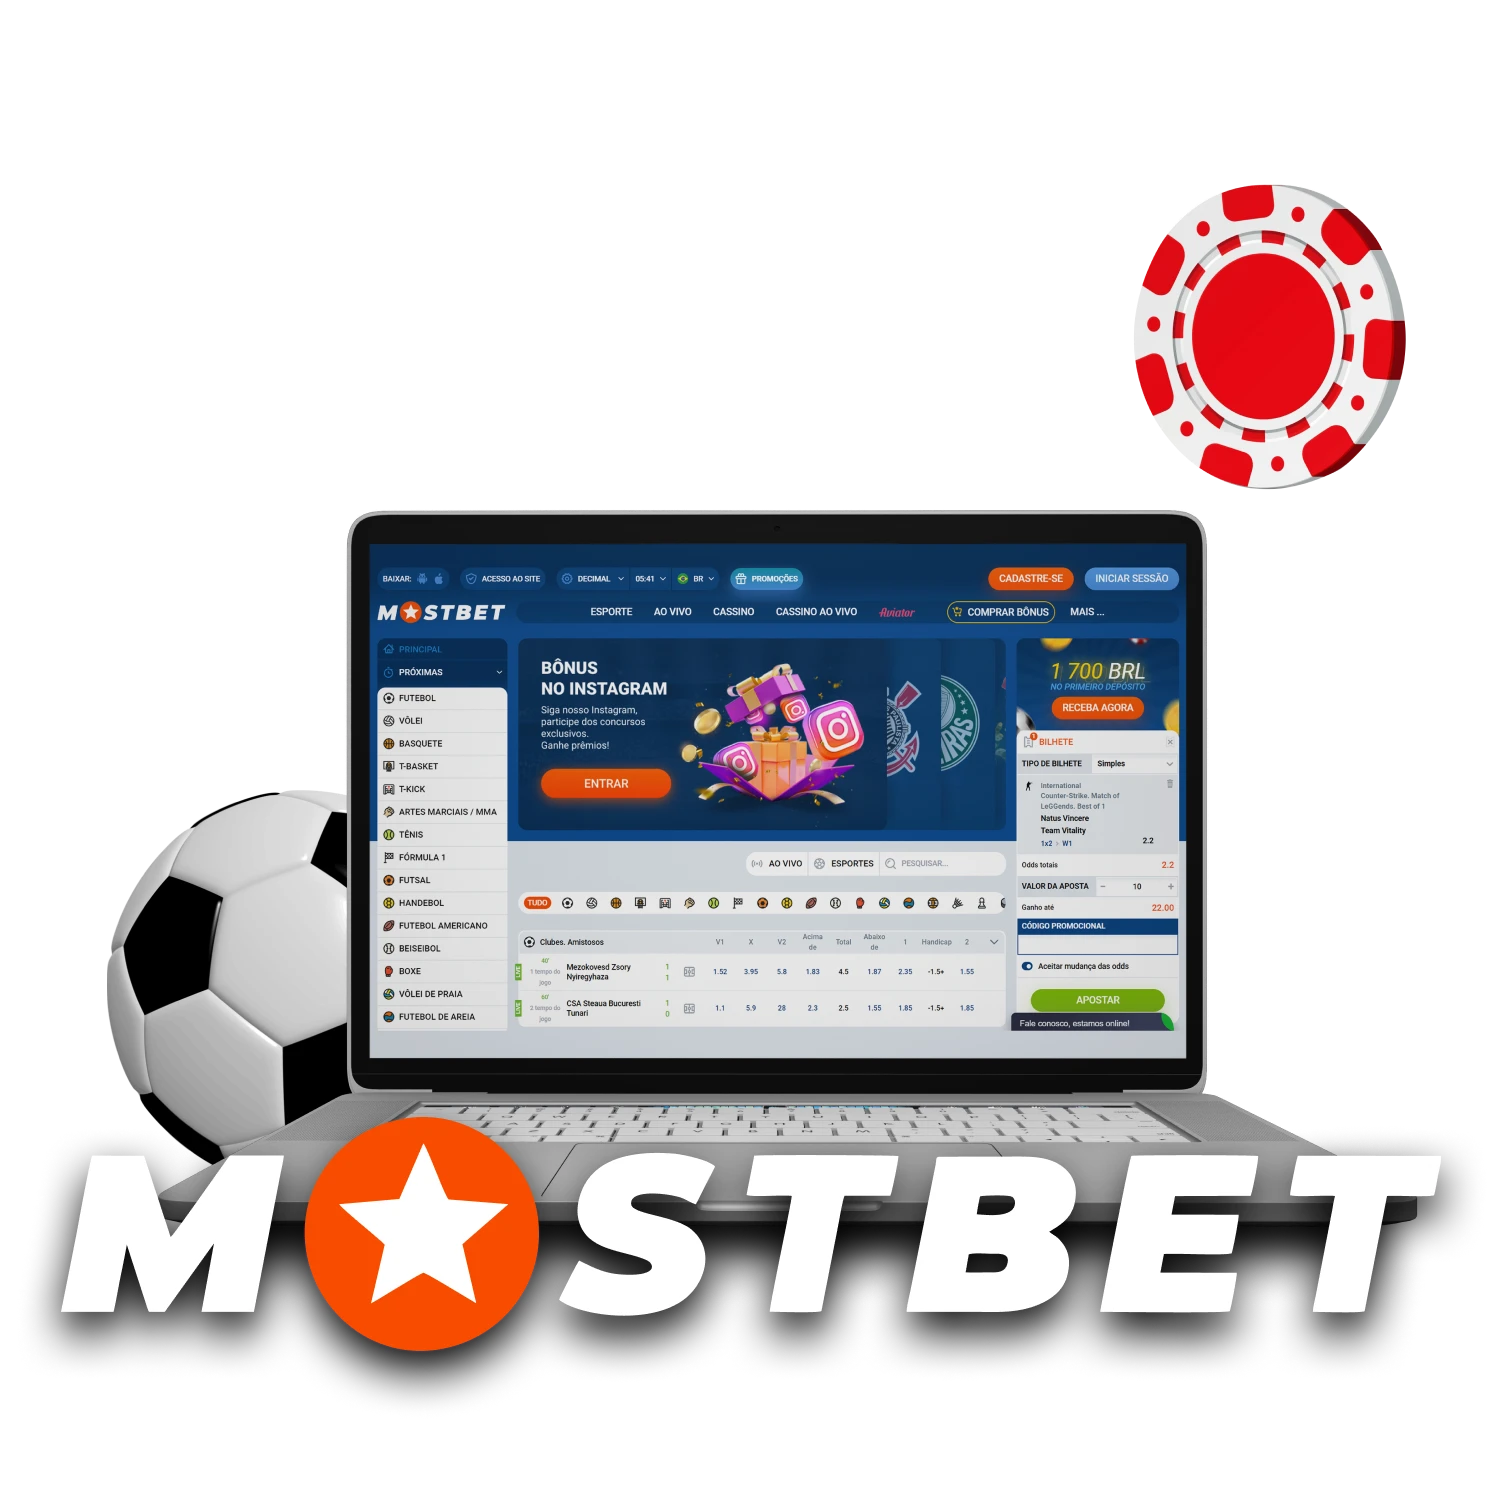 Para a conveniência de usar o serviço Mostbet, instale-o em um PC.